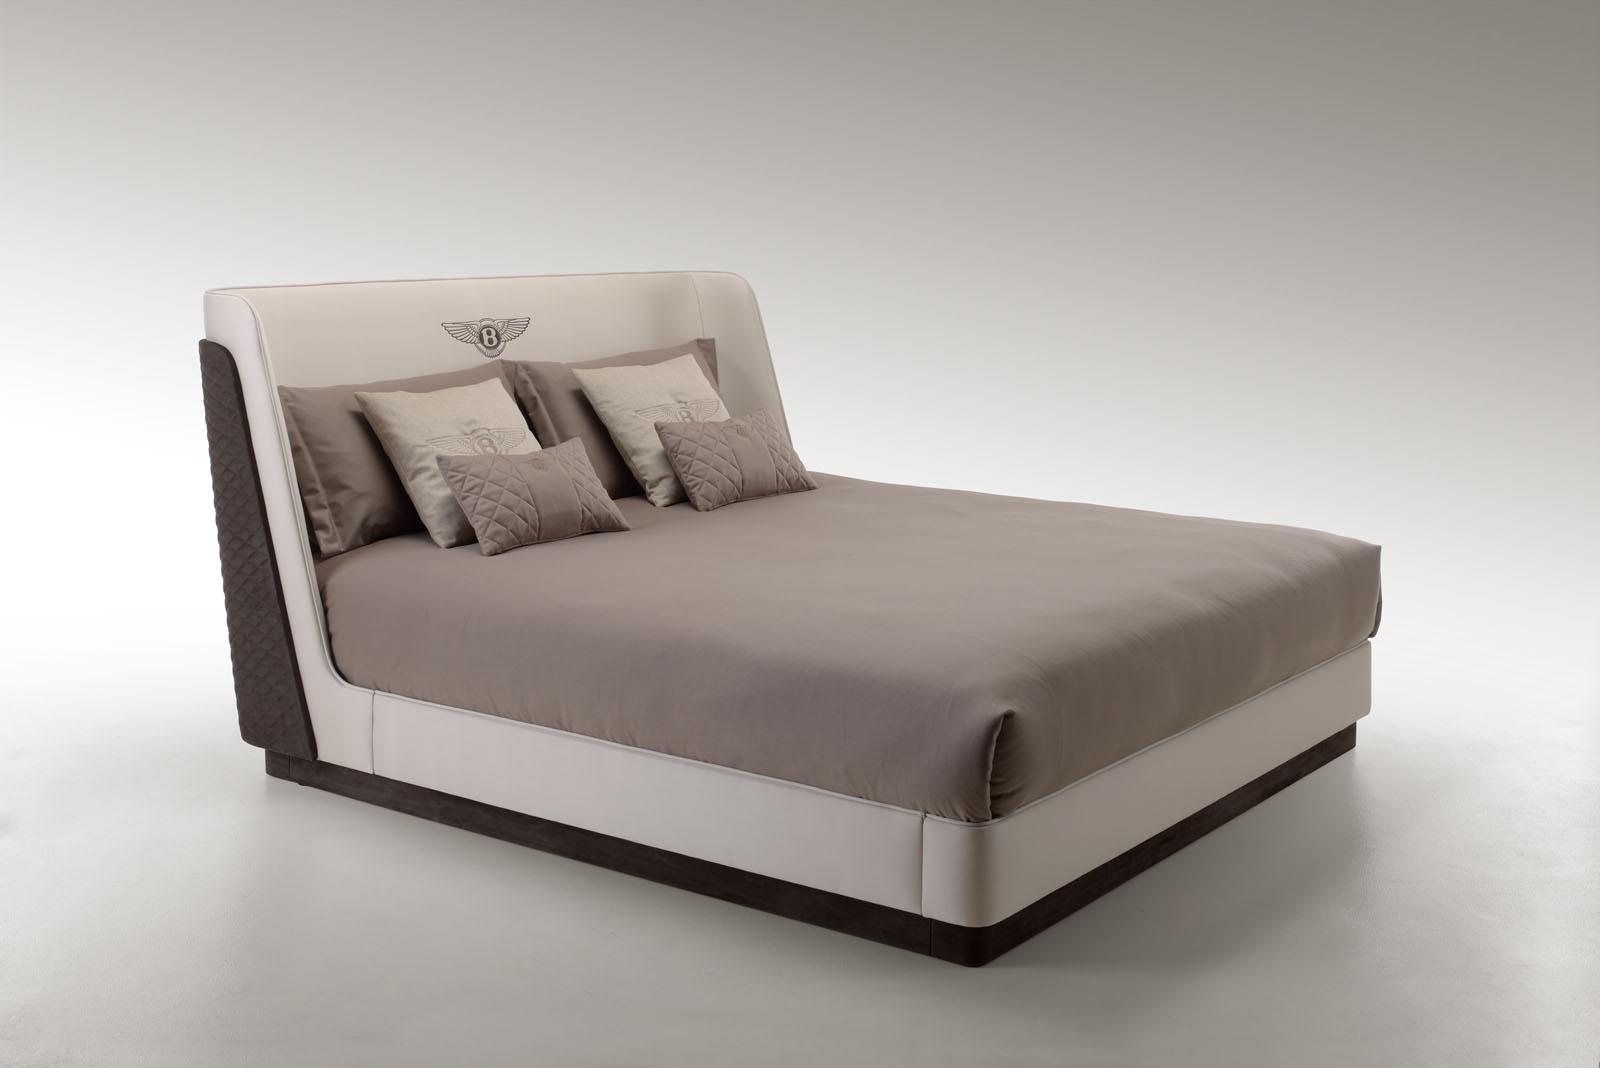 Отдыхай по-богатому: новая коллекция кроватей и диванов от… Bentley